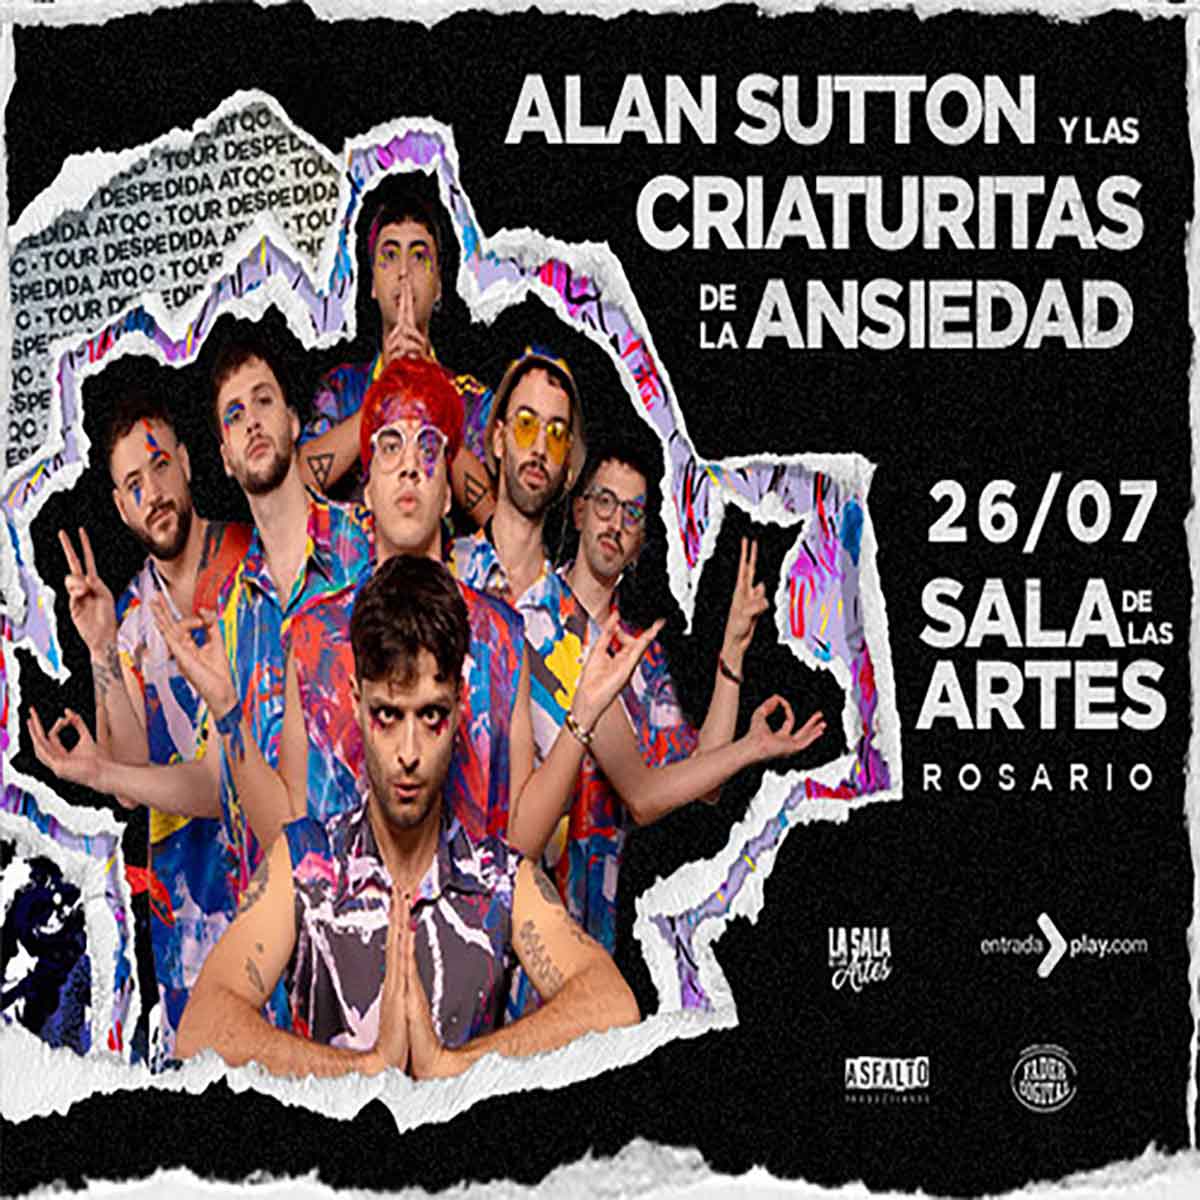 Alan Sutton y Las Criaturitas de la Ansiedad en Rosario